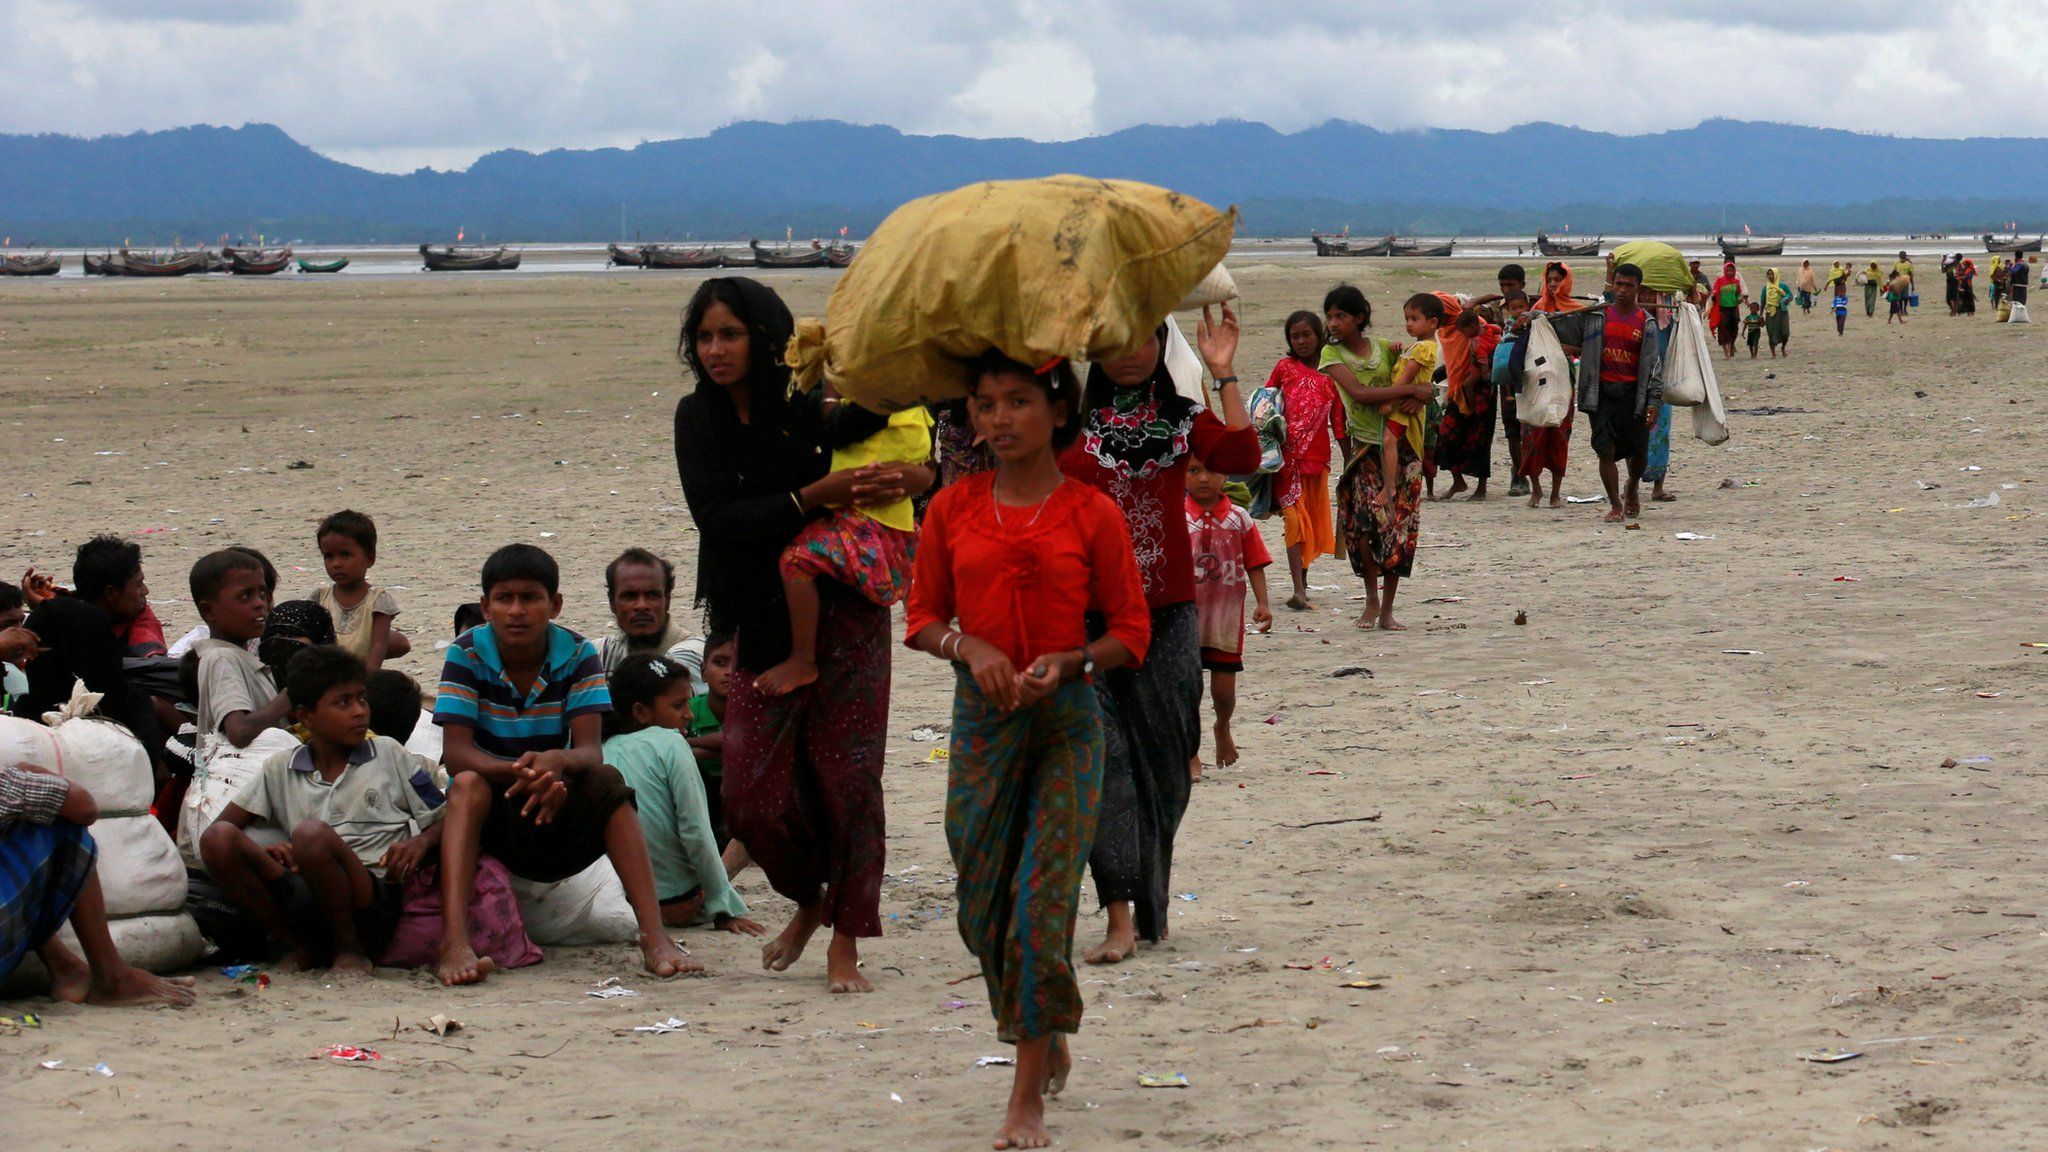 Rohingya refugees walk to a Border Guard Bangladesh (BGB) post after crossing the Bangladesh-Myanmar border by boat through the Bay of Bengal in Shah Porir Dwip, Bangladesh, 10 September 2017